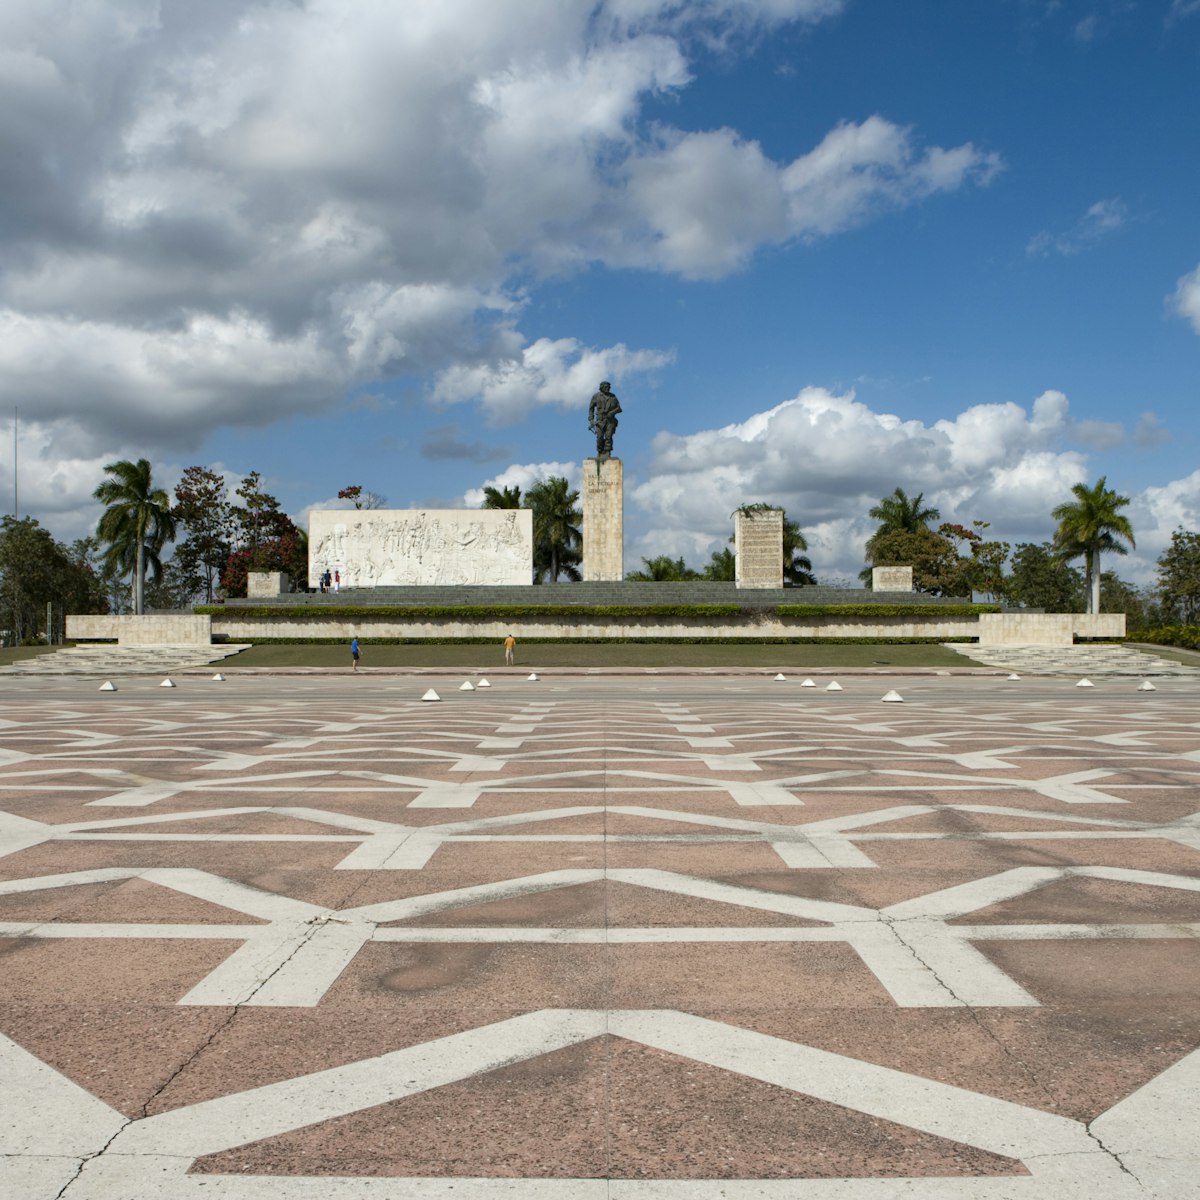 Monumento Ernesto Che Guevara monument and statue.